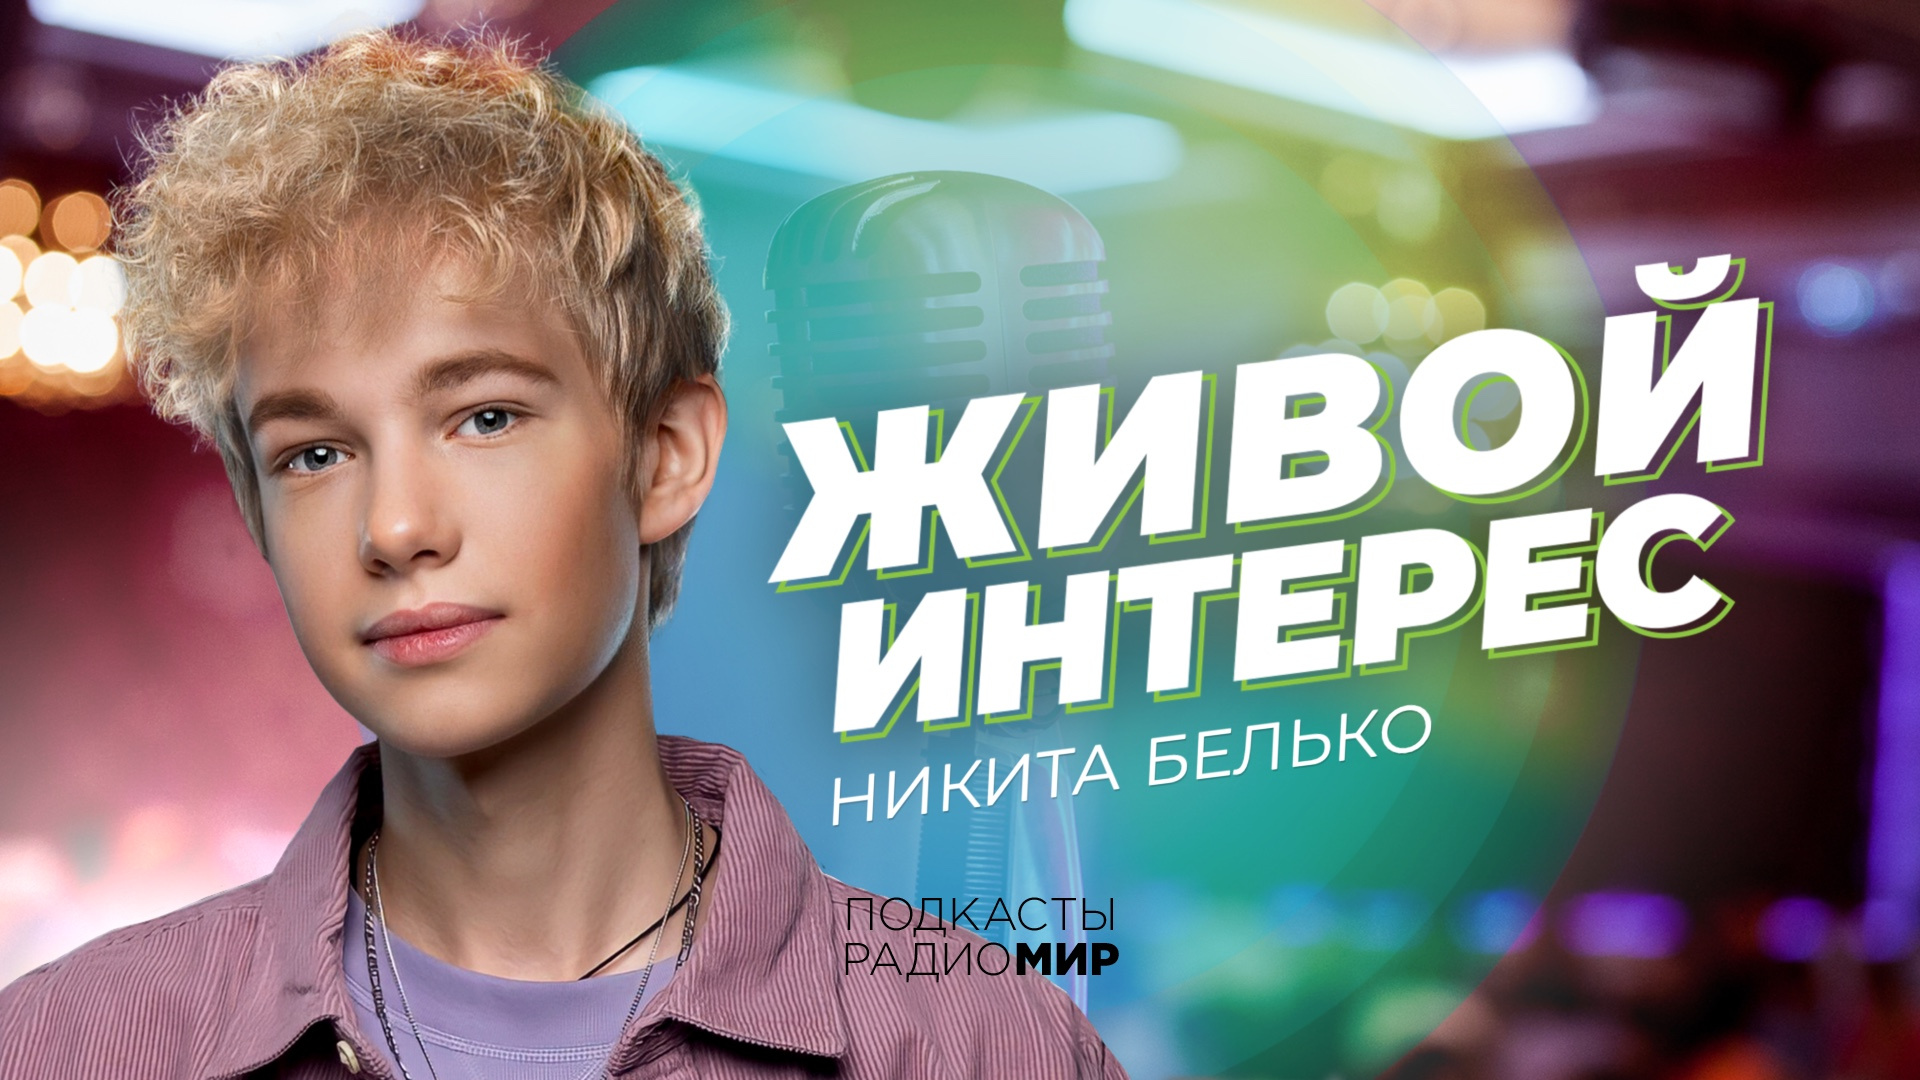 Гость проекта «Живой Интерес»  — певец и и кумир молодежи Никита Белько